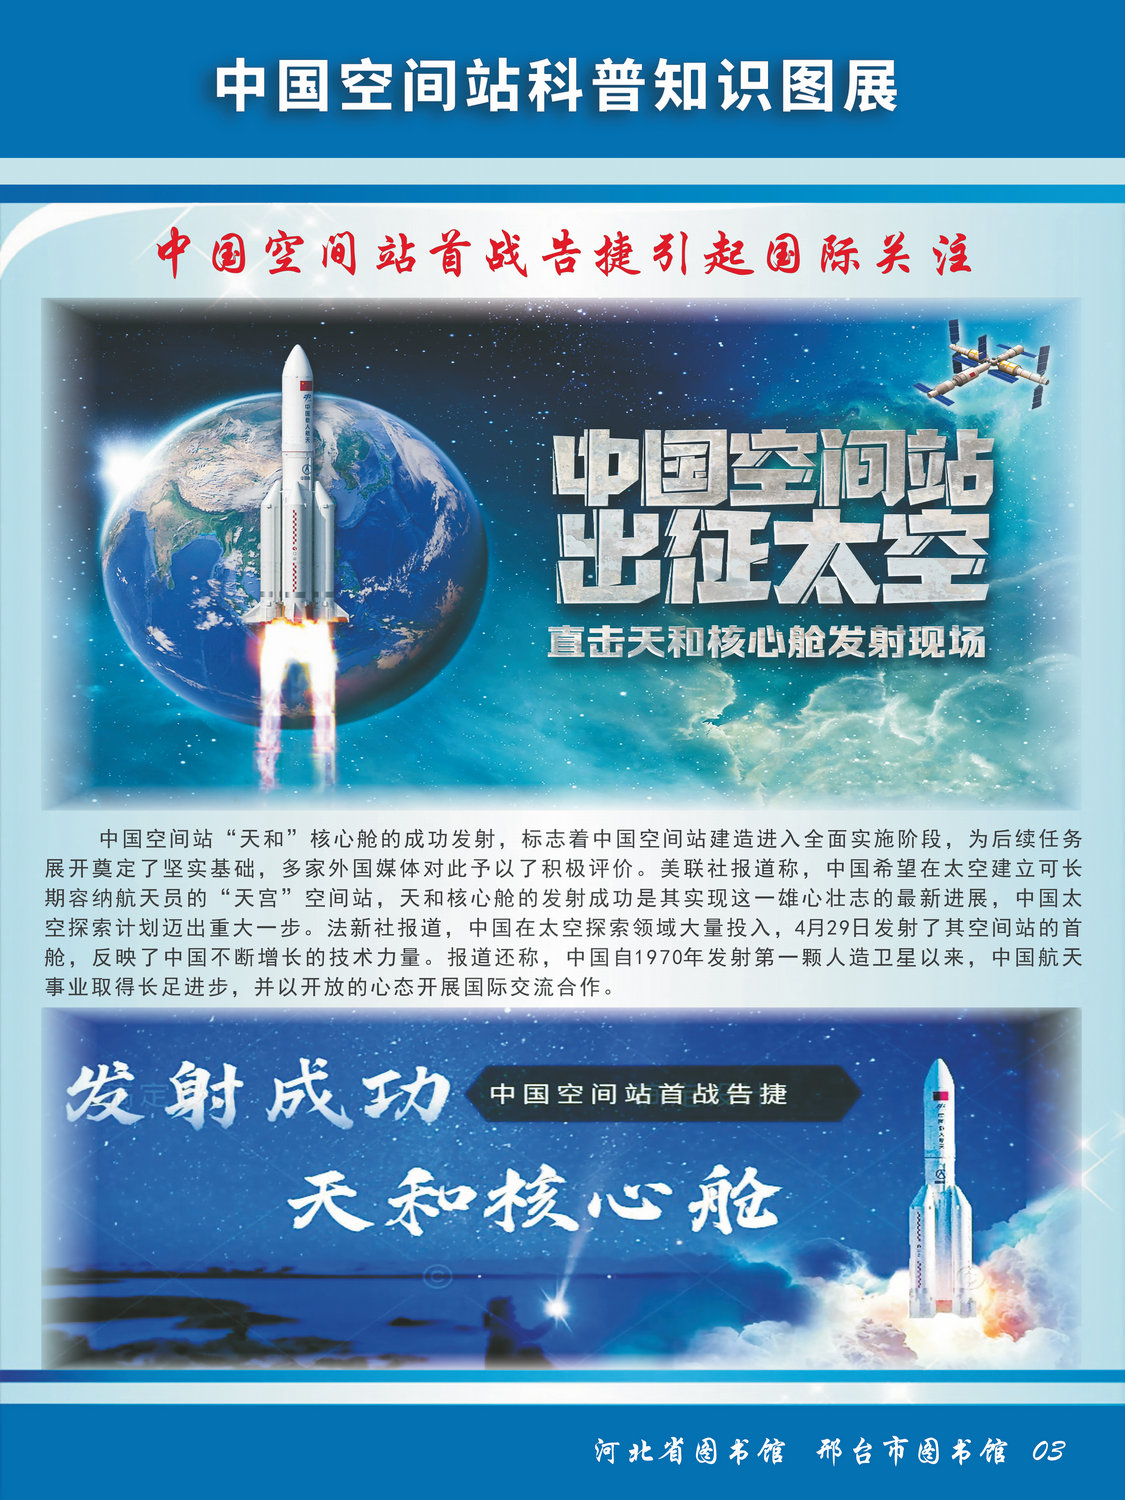 中国空间站科普知识图文展_图3